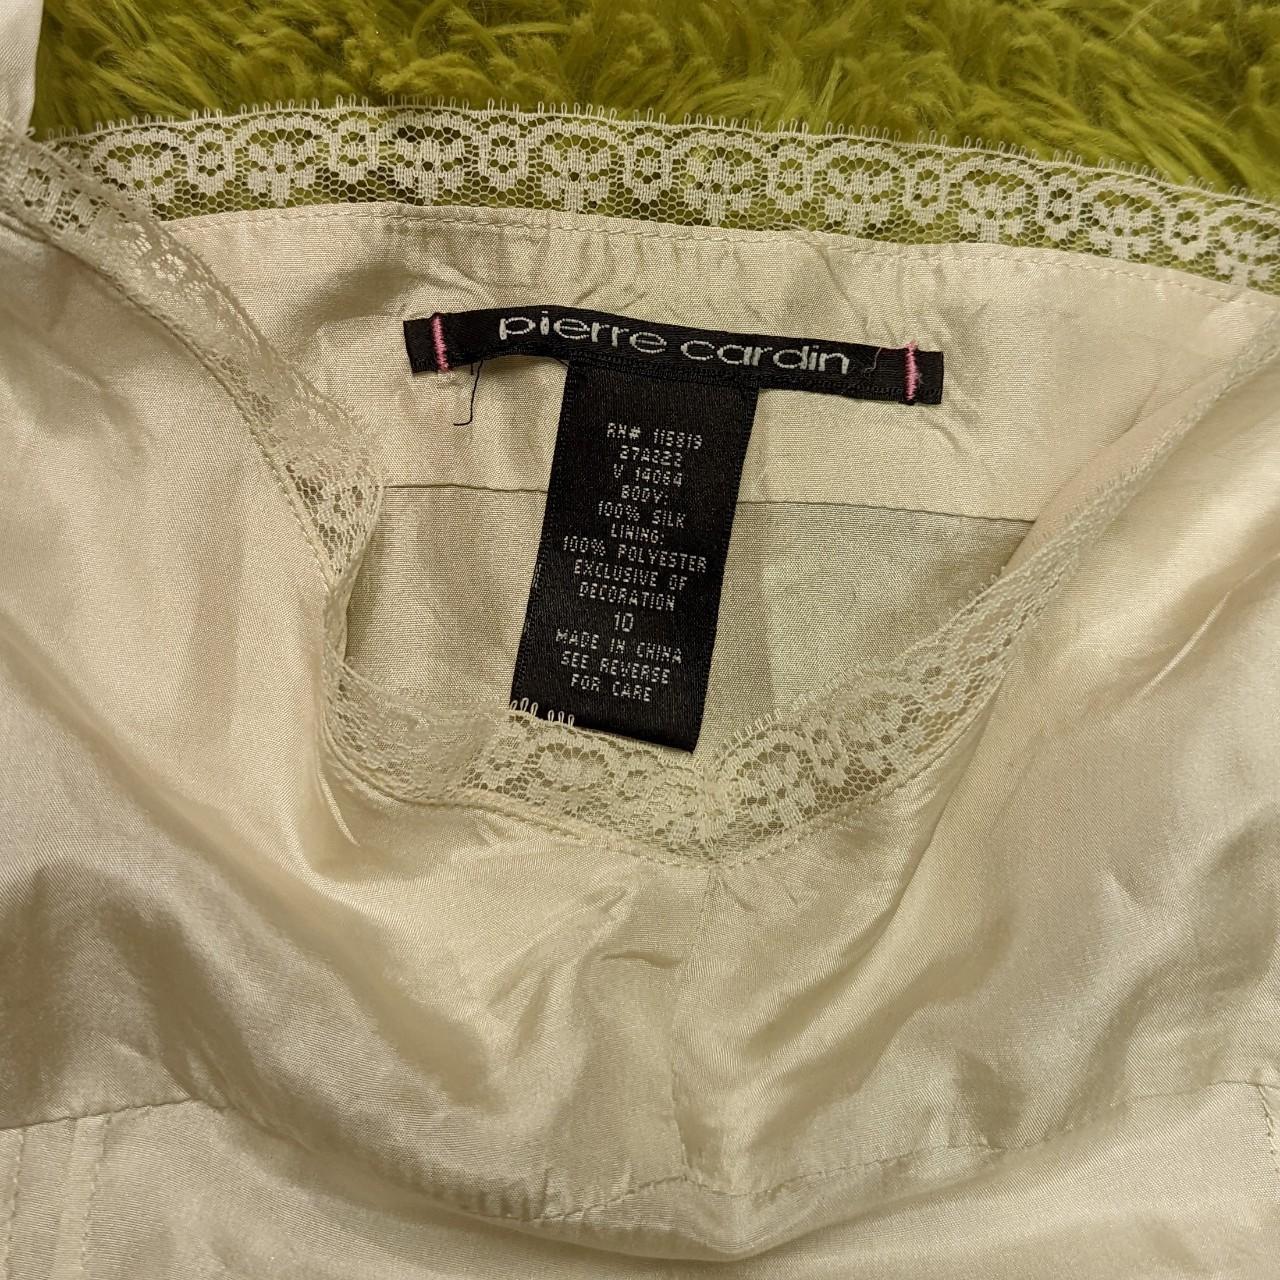 Vintage angelic cream silk camisole!! The most... - Depop